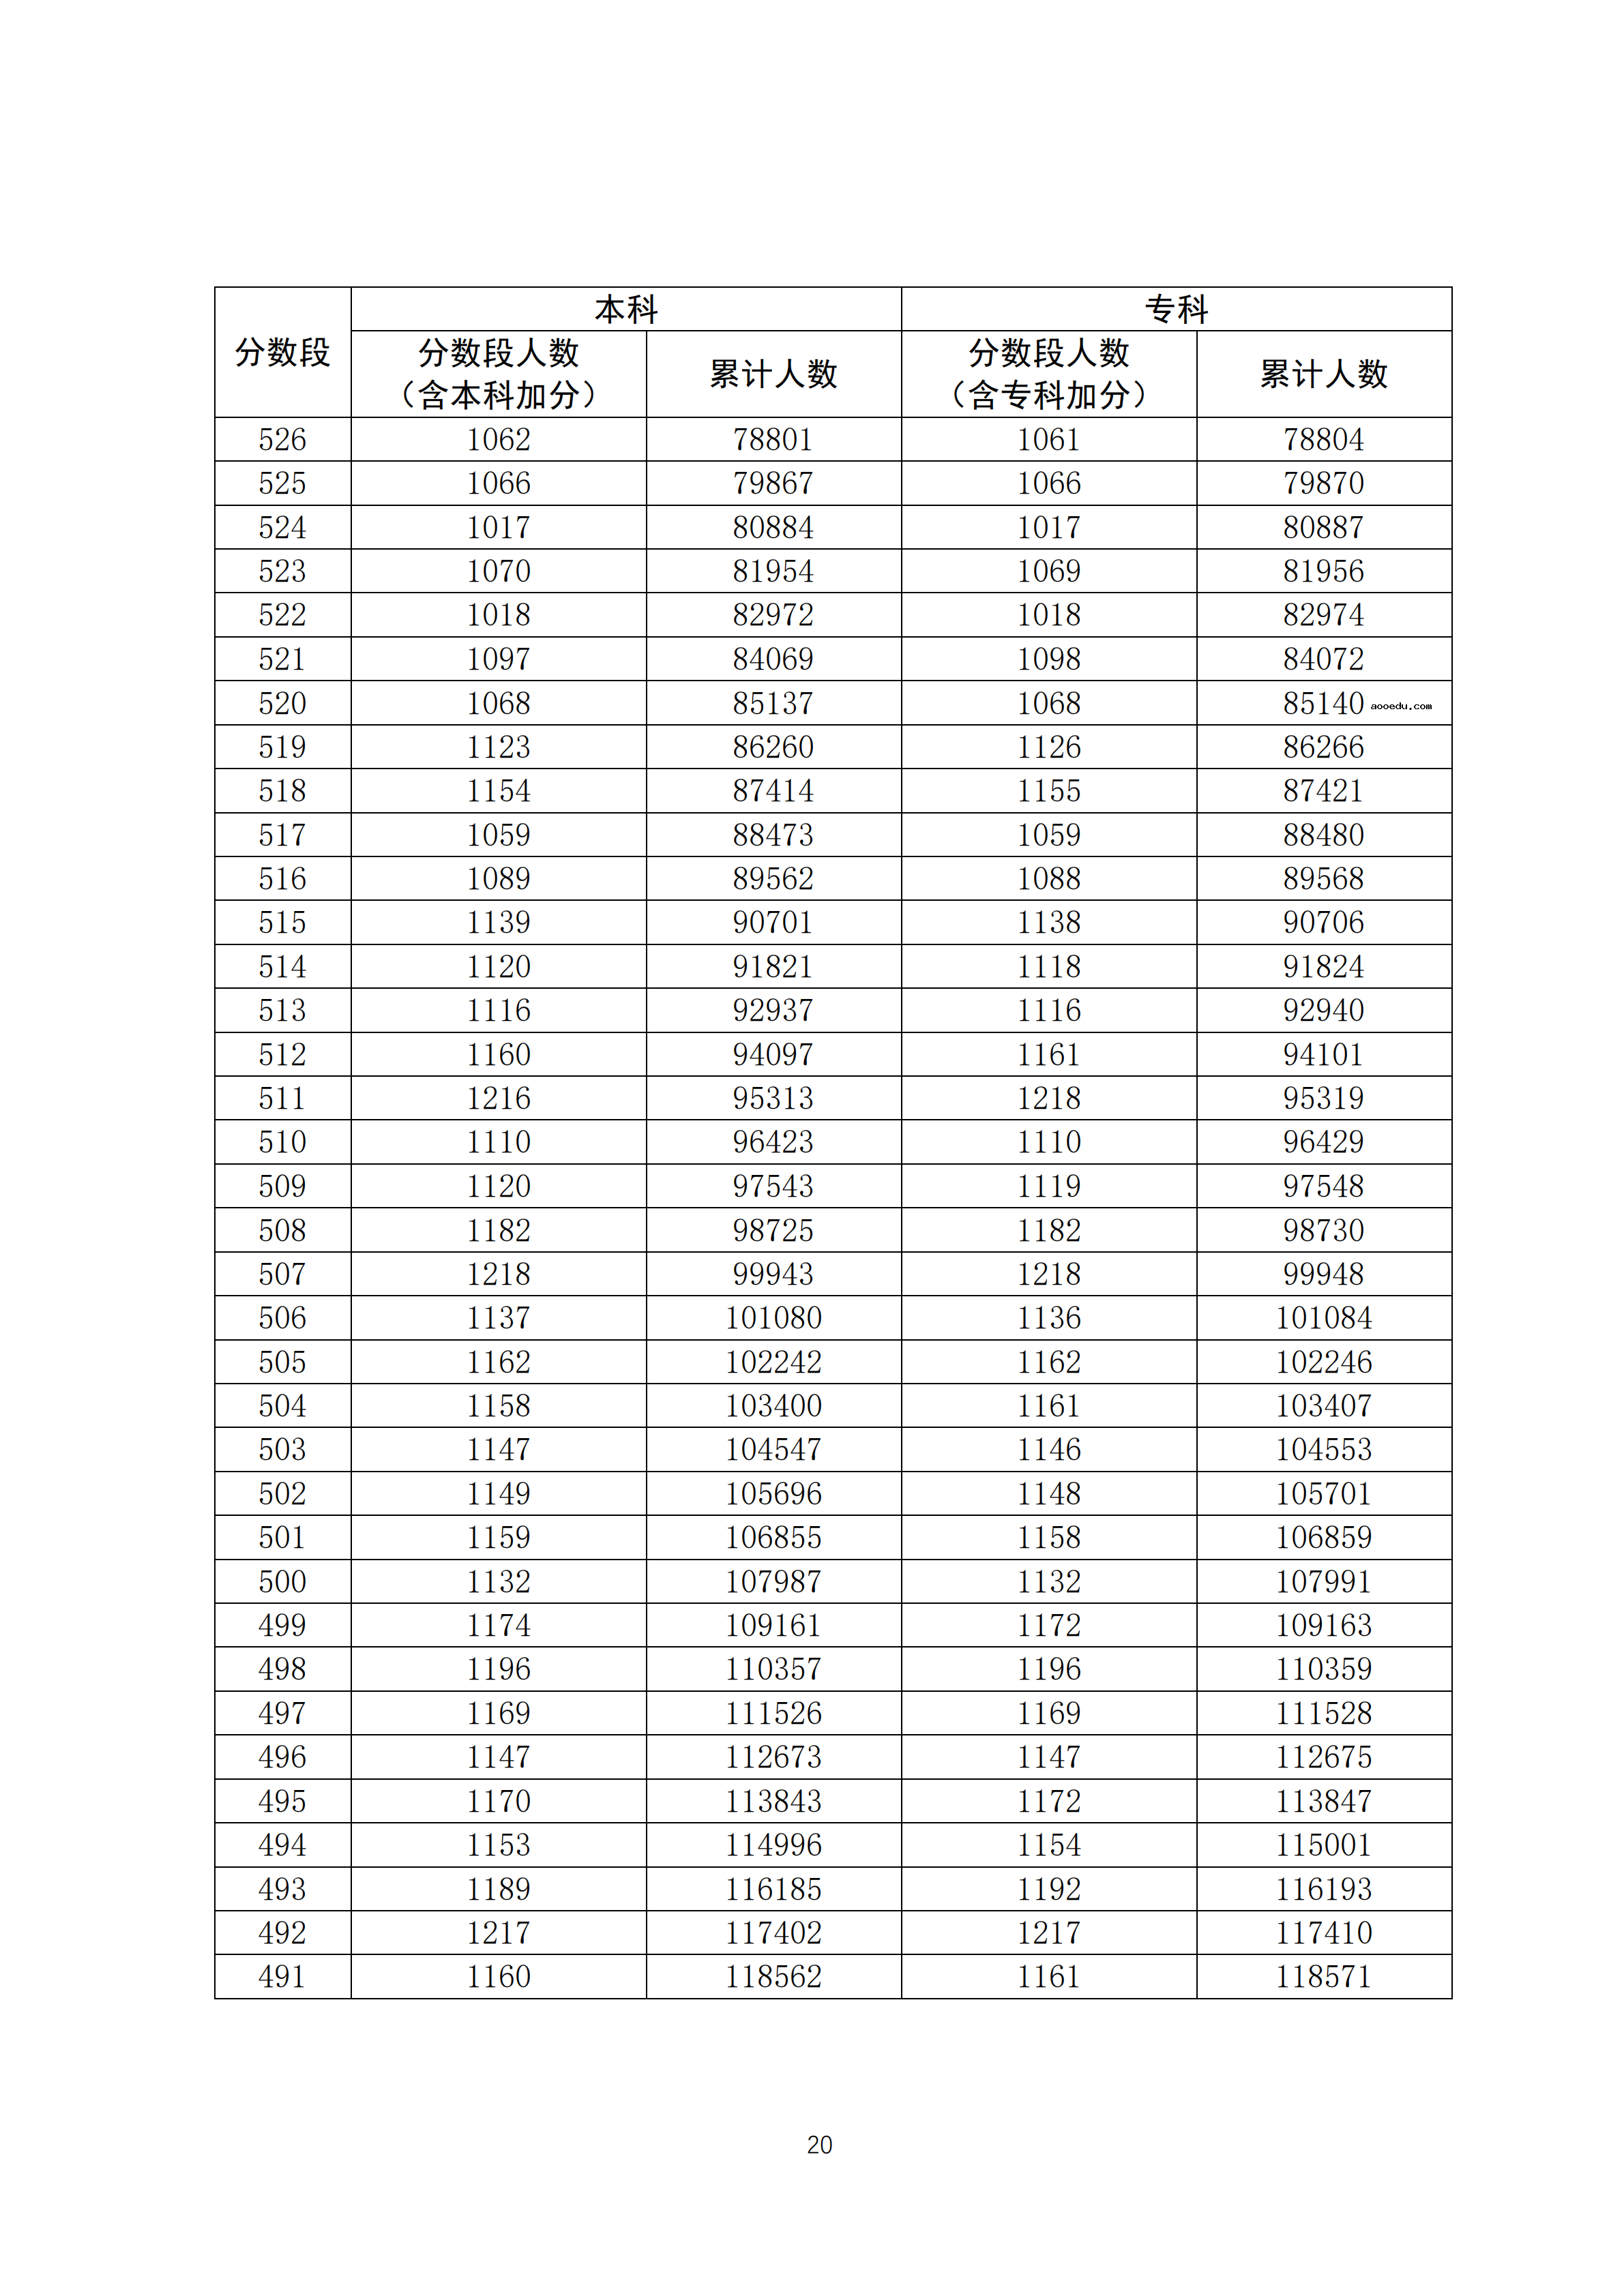 2020广东高考一分一段表 理科成绩排名